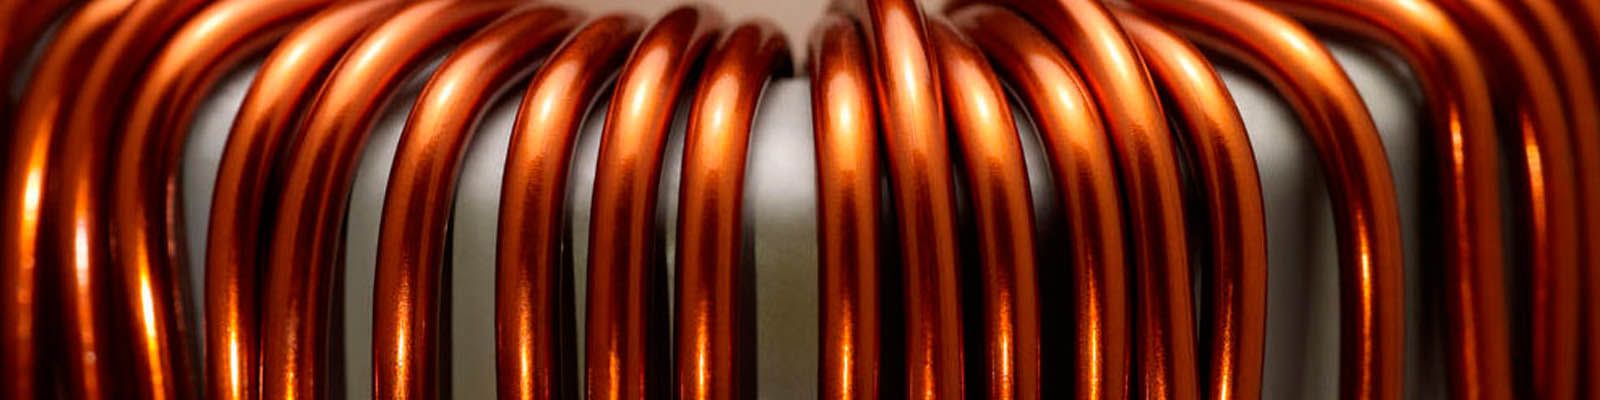 Talleres Arisa alambres de cobre